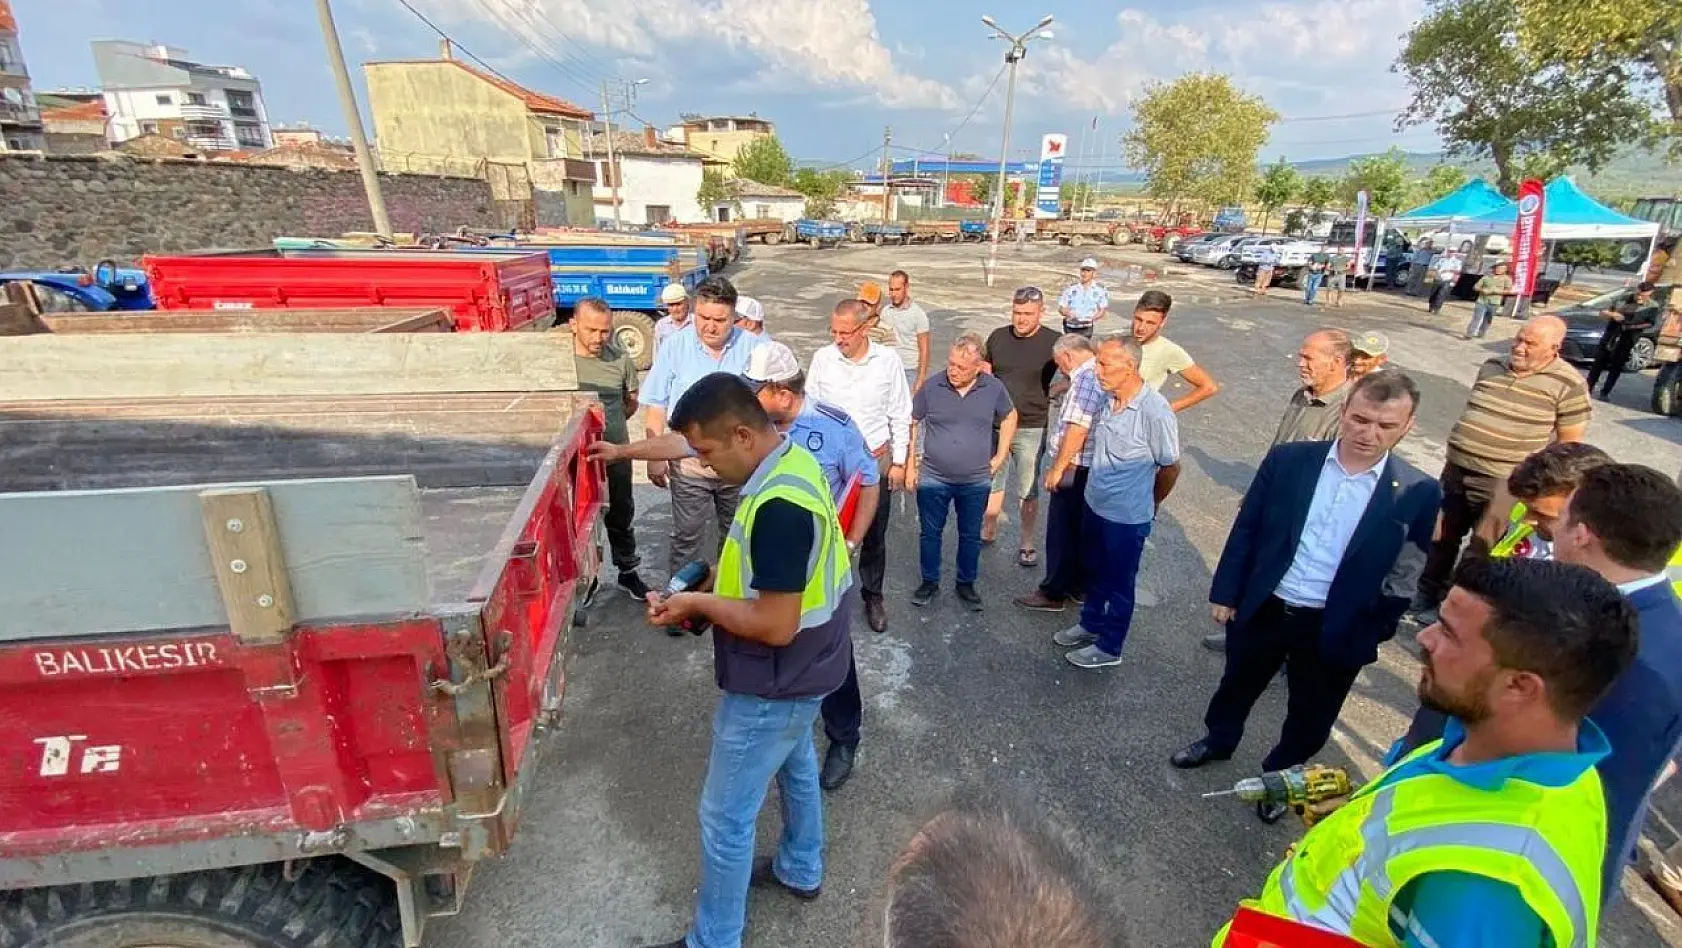 Balıkesir Büyükşehir Belediyesi'nden reflektör desteği